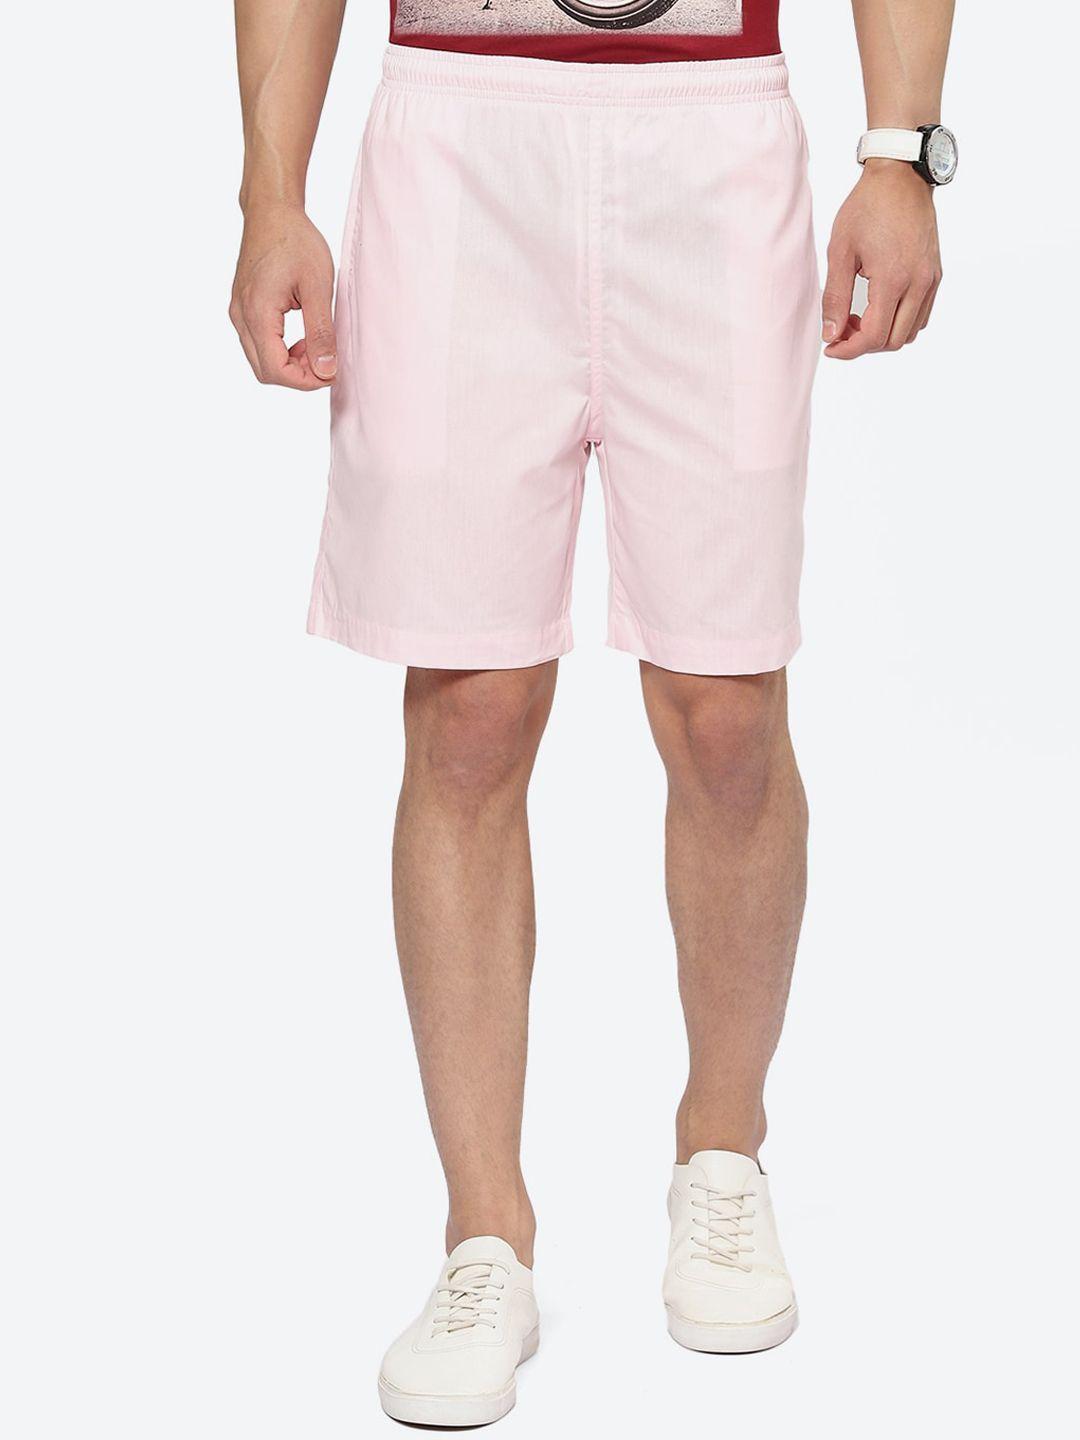 2bme-men-mid-rise-cotton-shorts